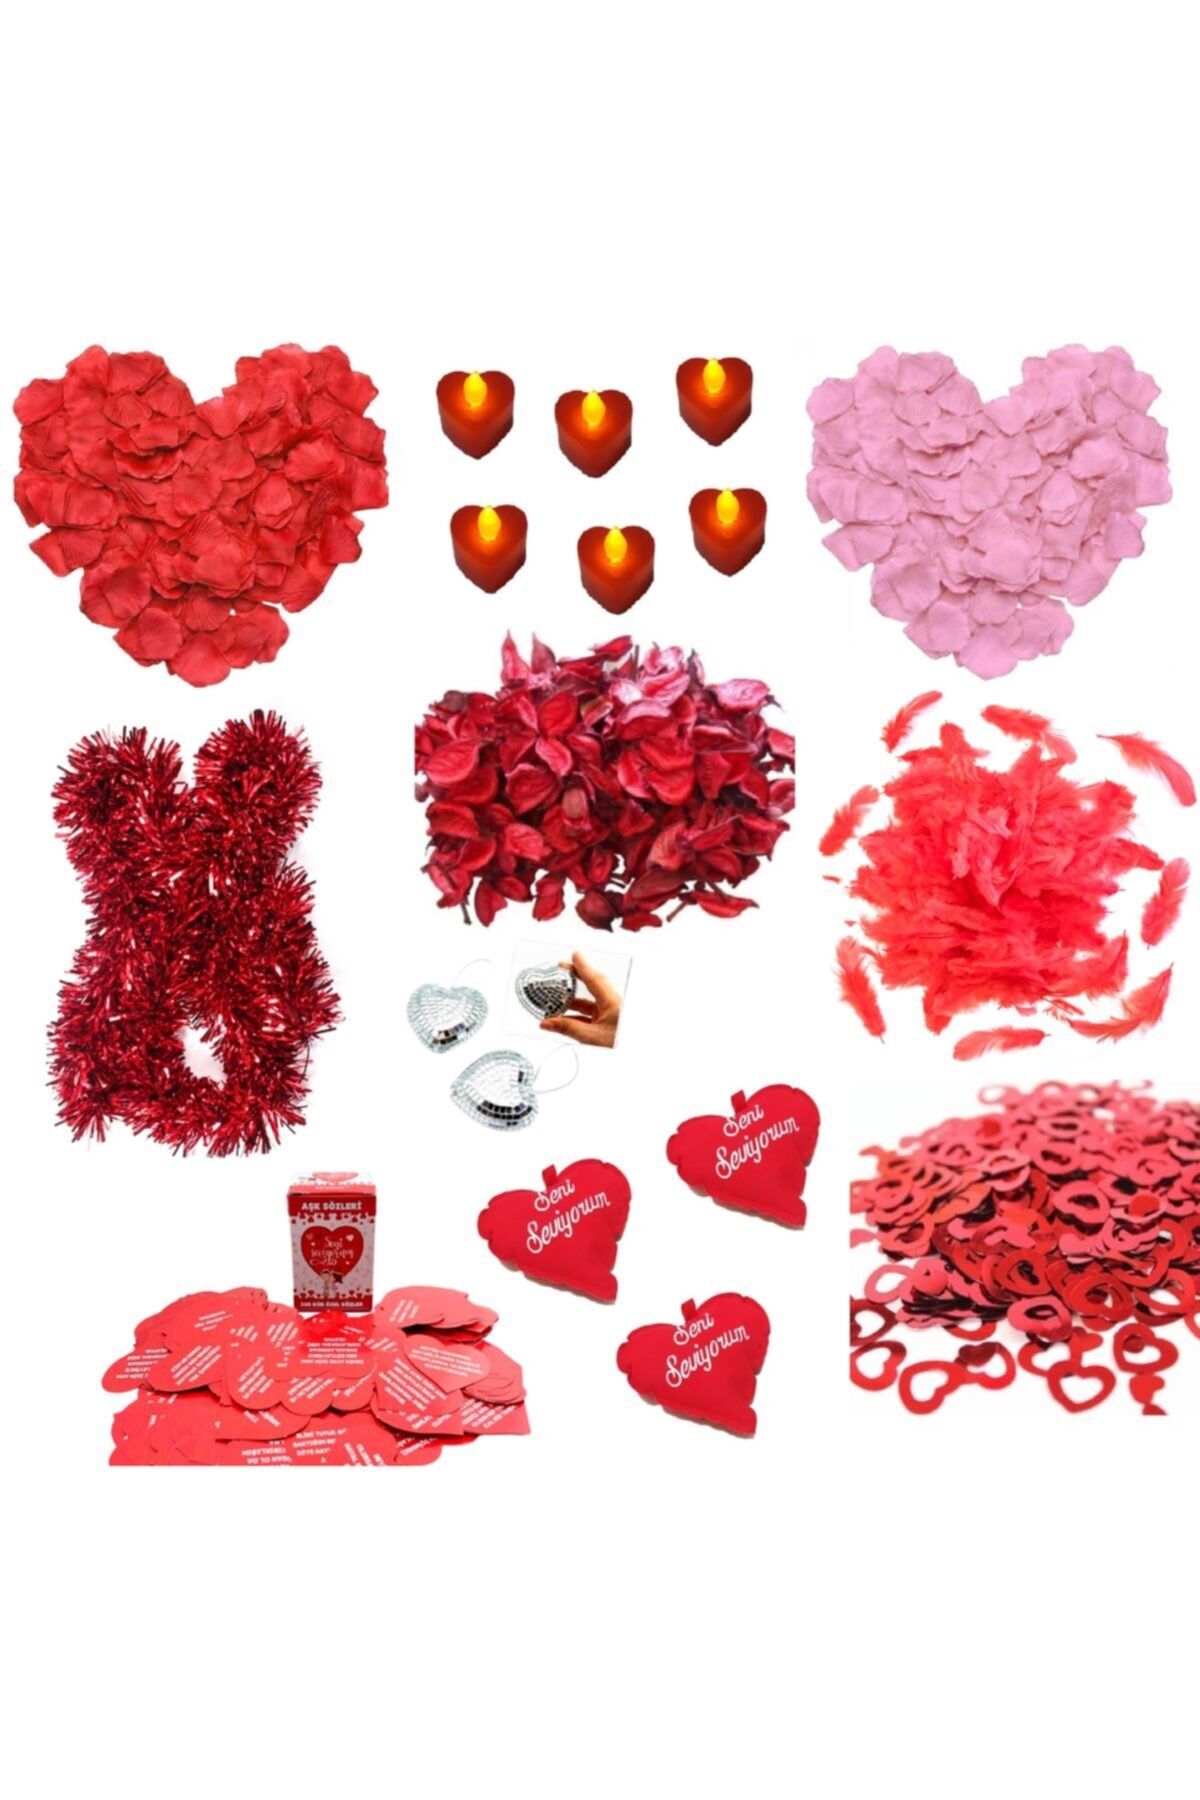 Happyland Sevgililer Günü - Evlilik Teklifi - Romantik Ortam Hazırlama Aşk Paketi Hepsiiçinde-3 Modeli